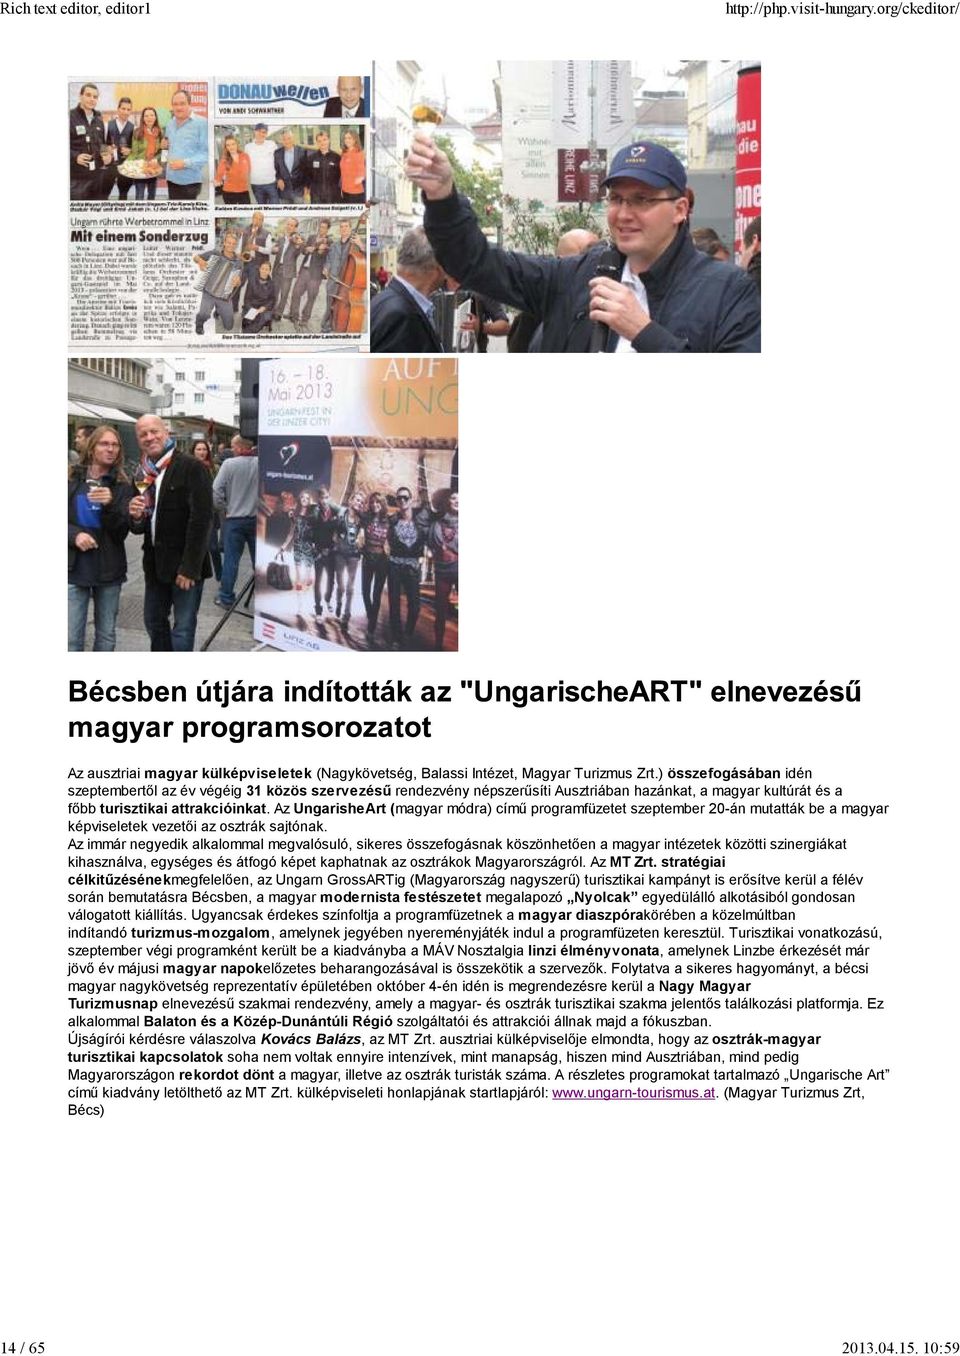 Az UngarisheArt (magyar módra) című programfüzetet szeptember 20-án mutatták be a magyar képviseletek vezetői az osztrák sajtónak.